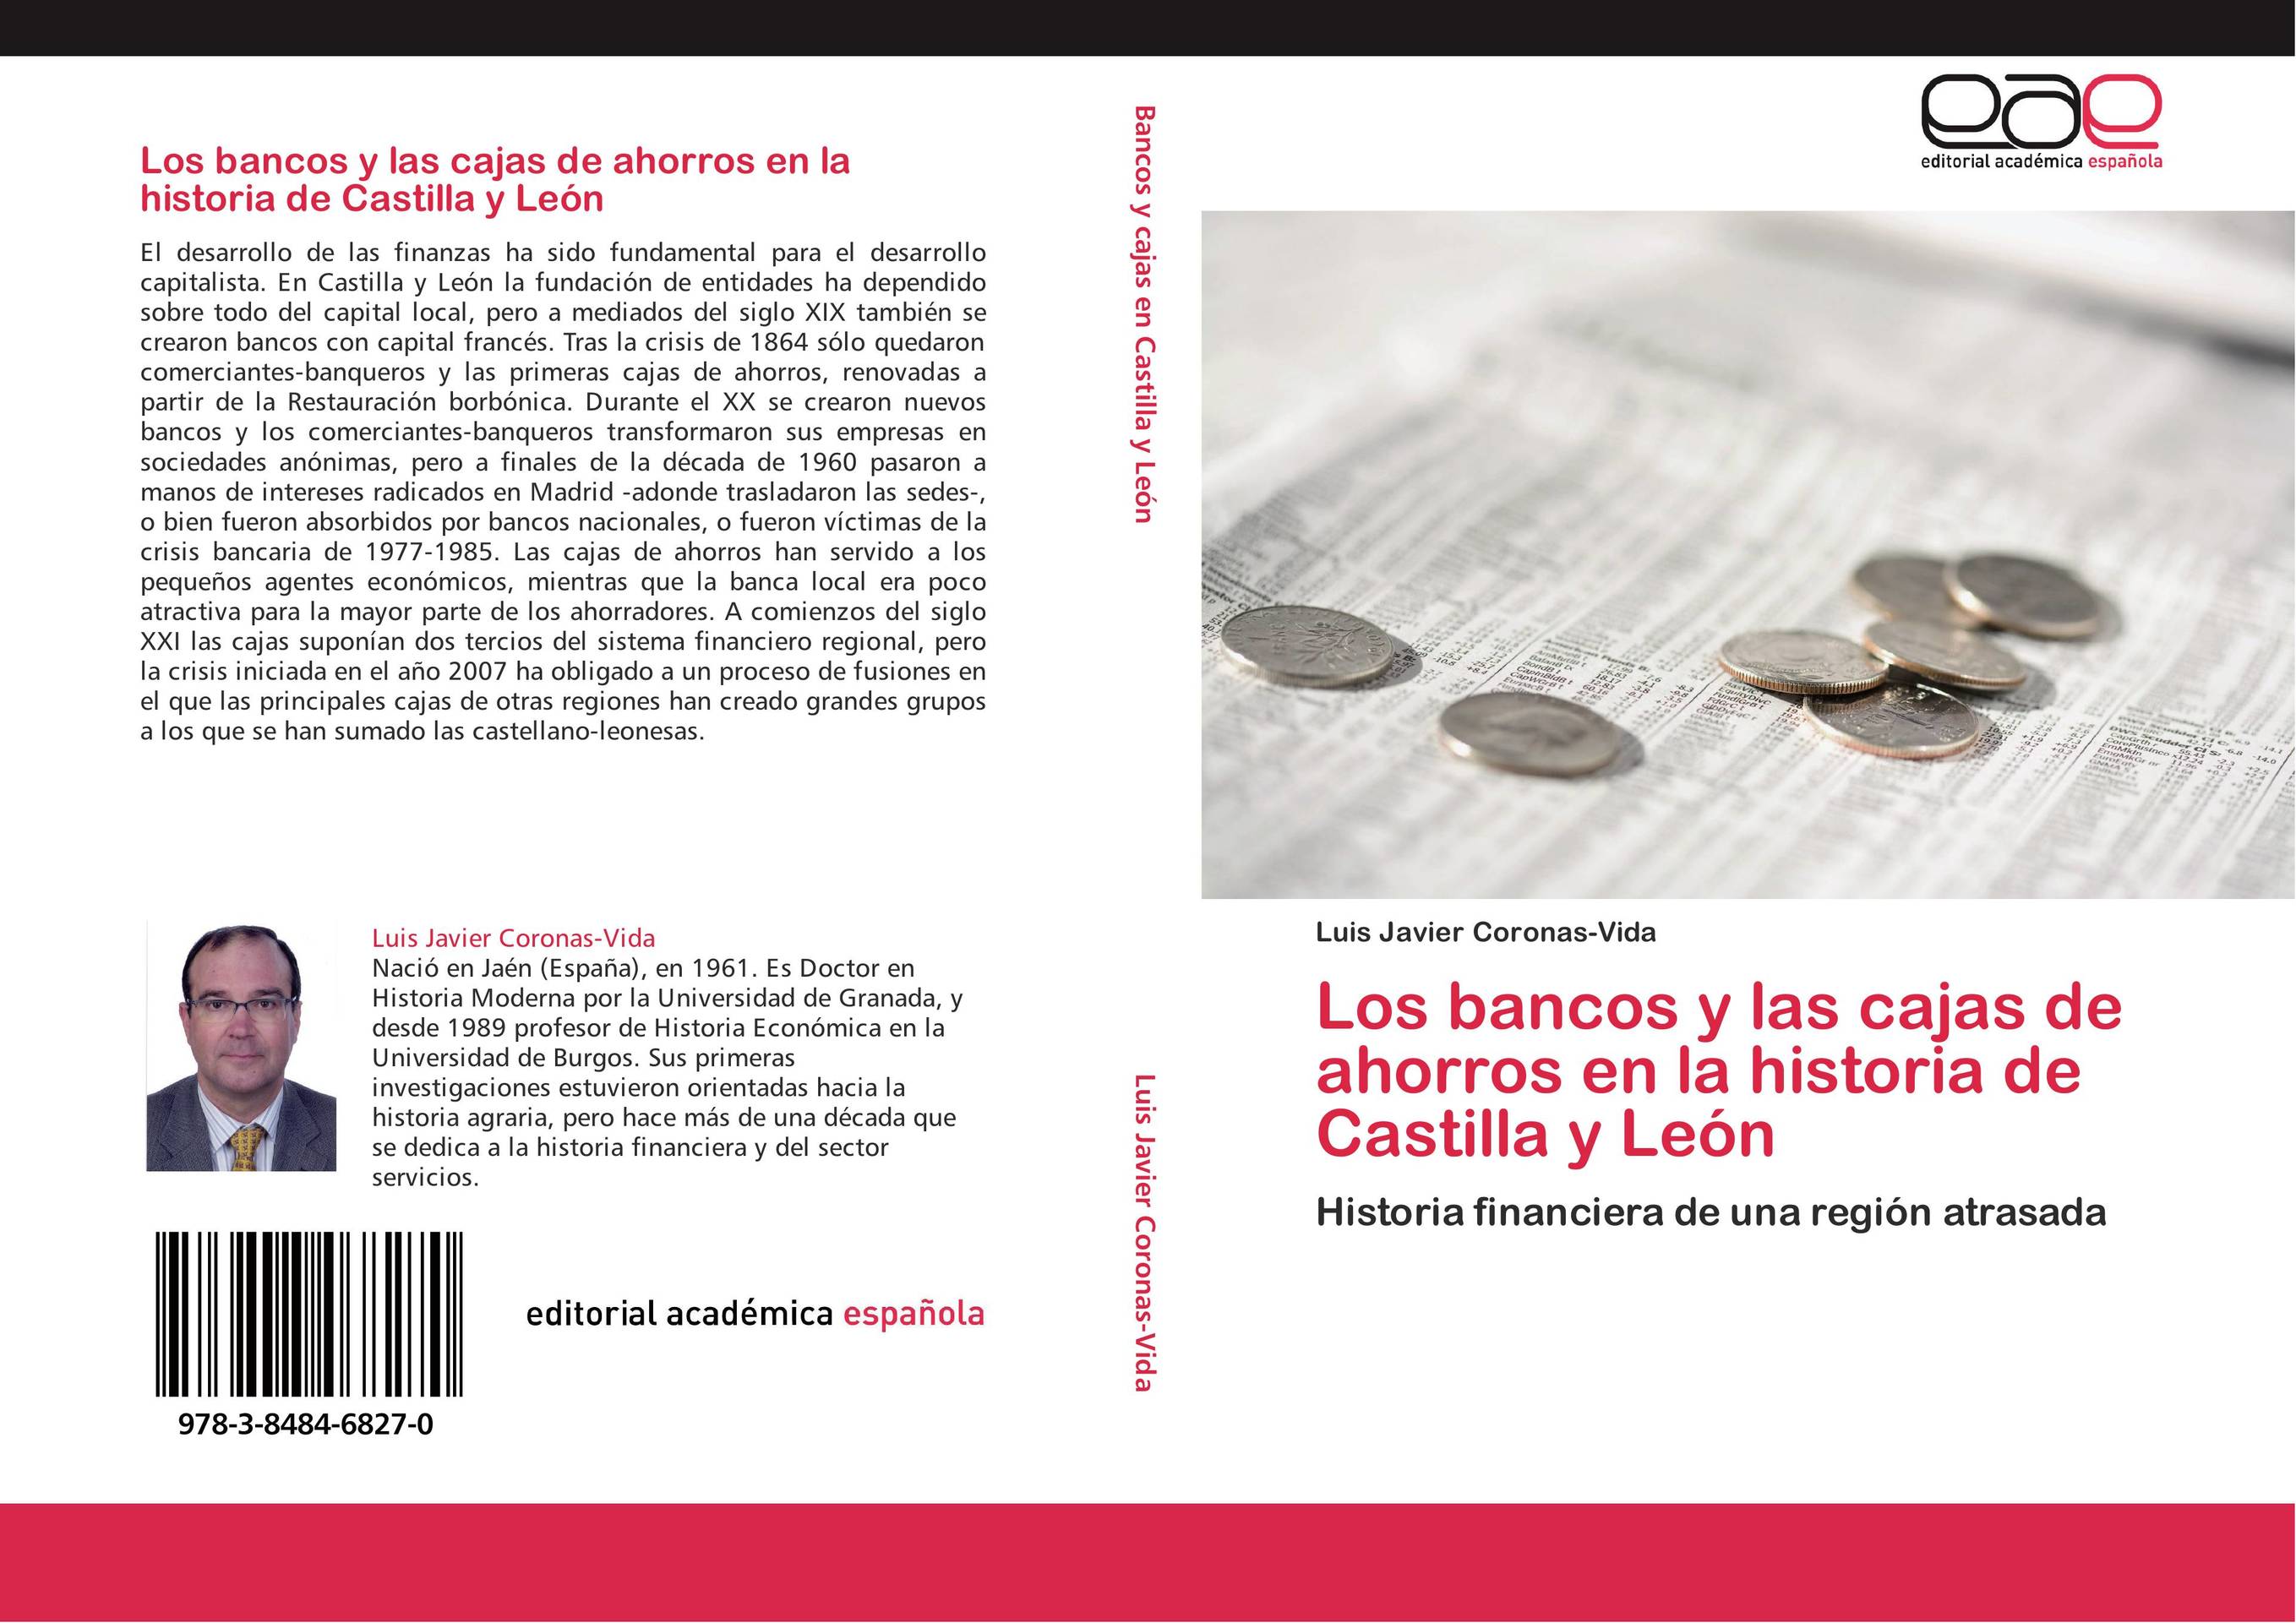 Los bancos y las cajas de ahorros en la historia de Castilla y León